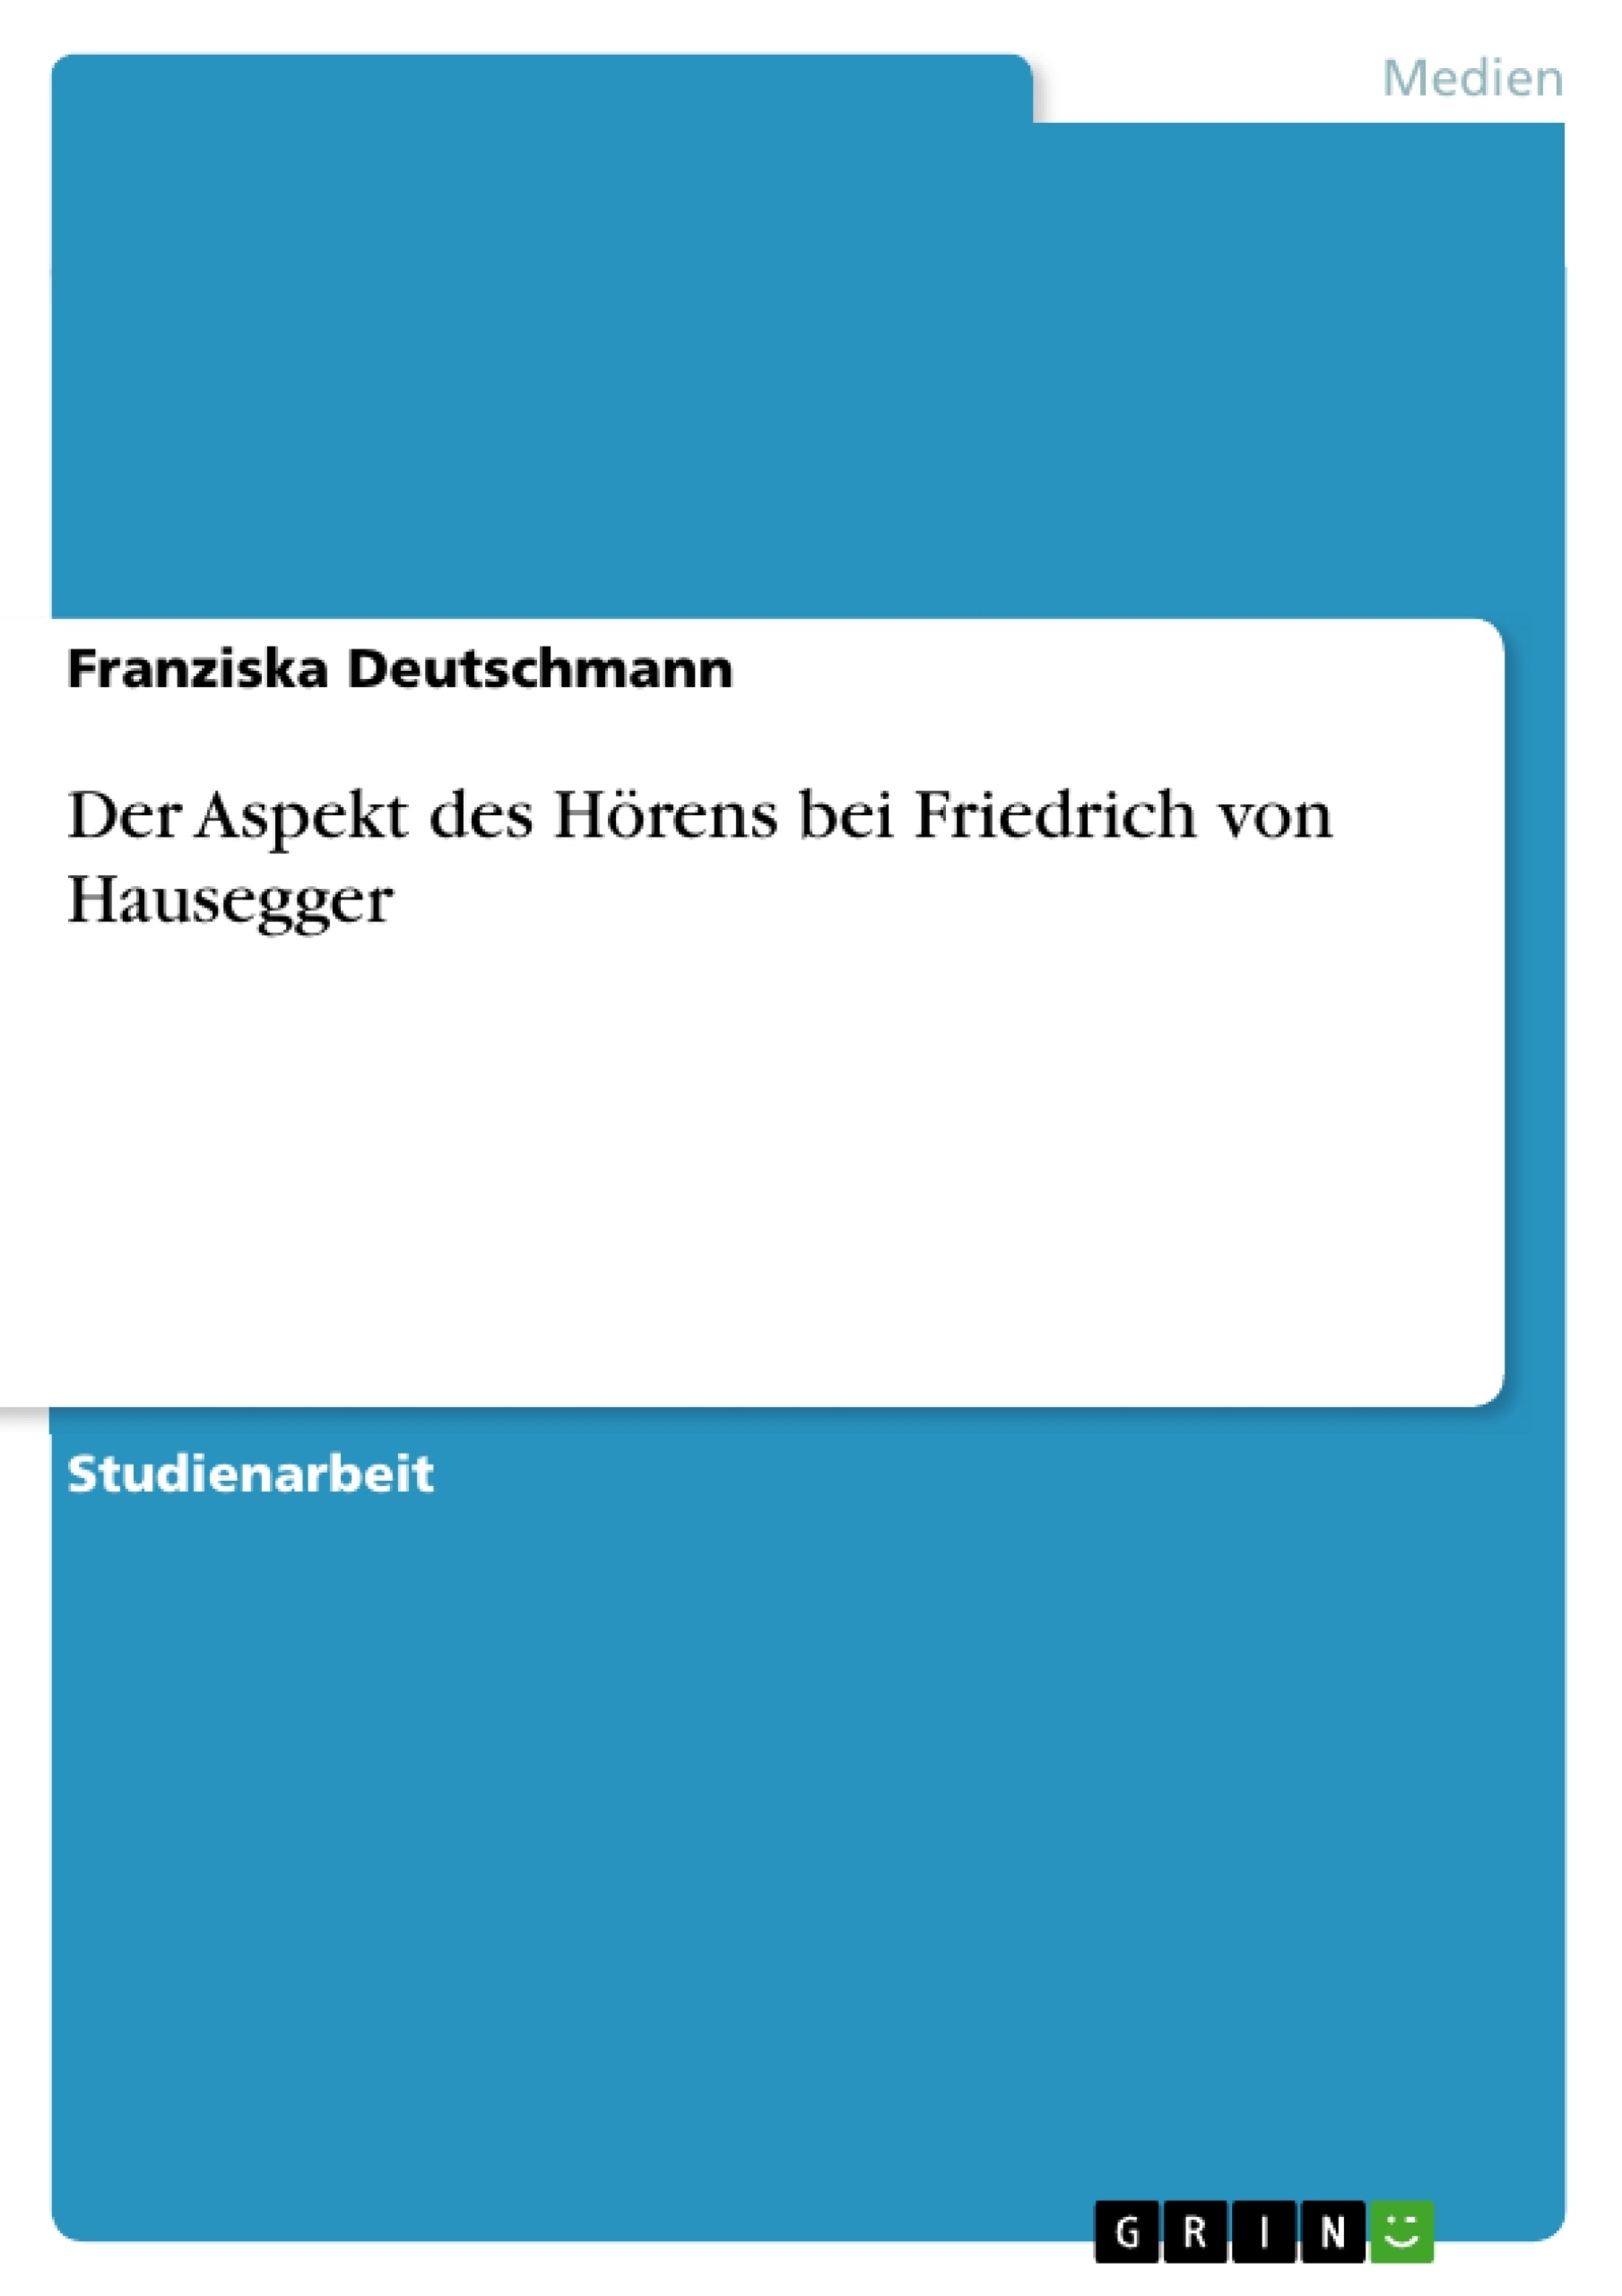 Título: Der Aspekt des Hörens bei Friedrich von Hausegger